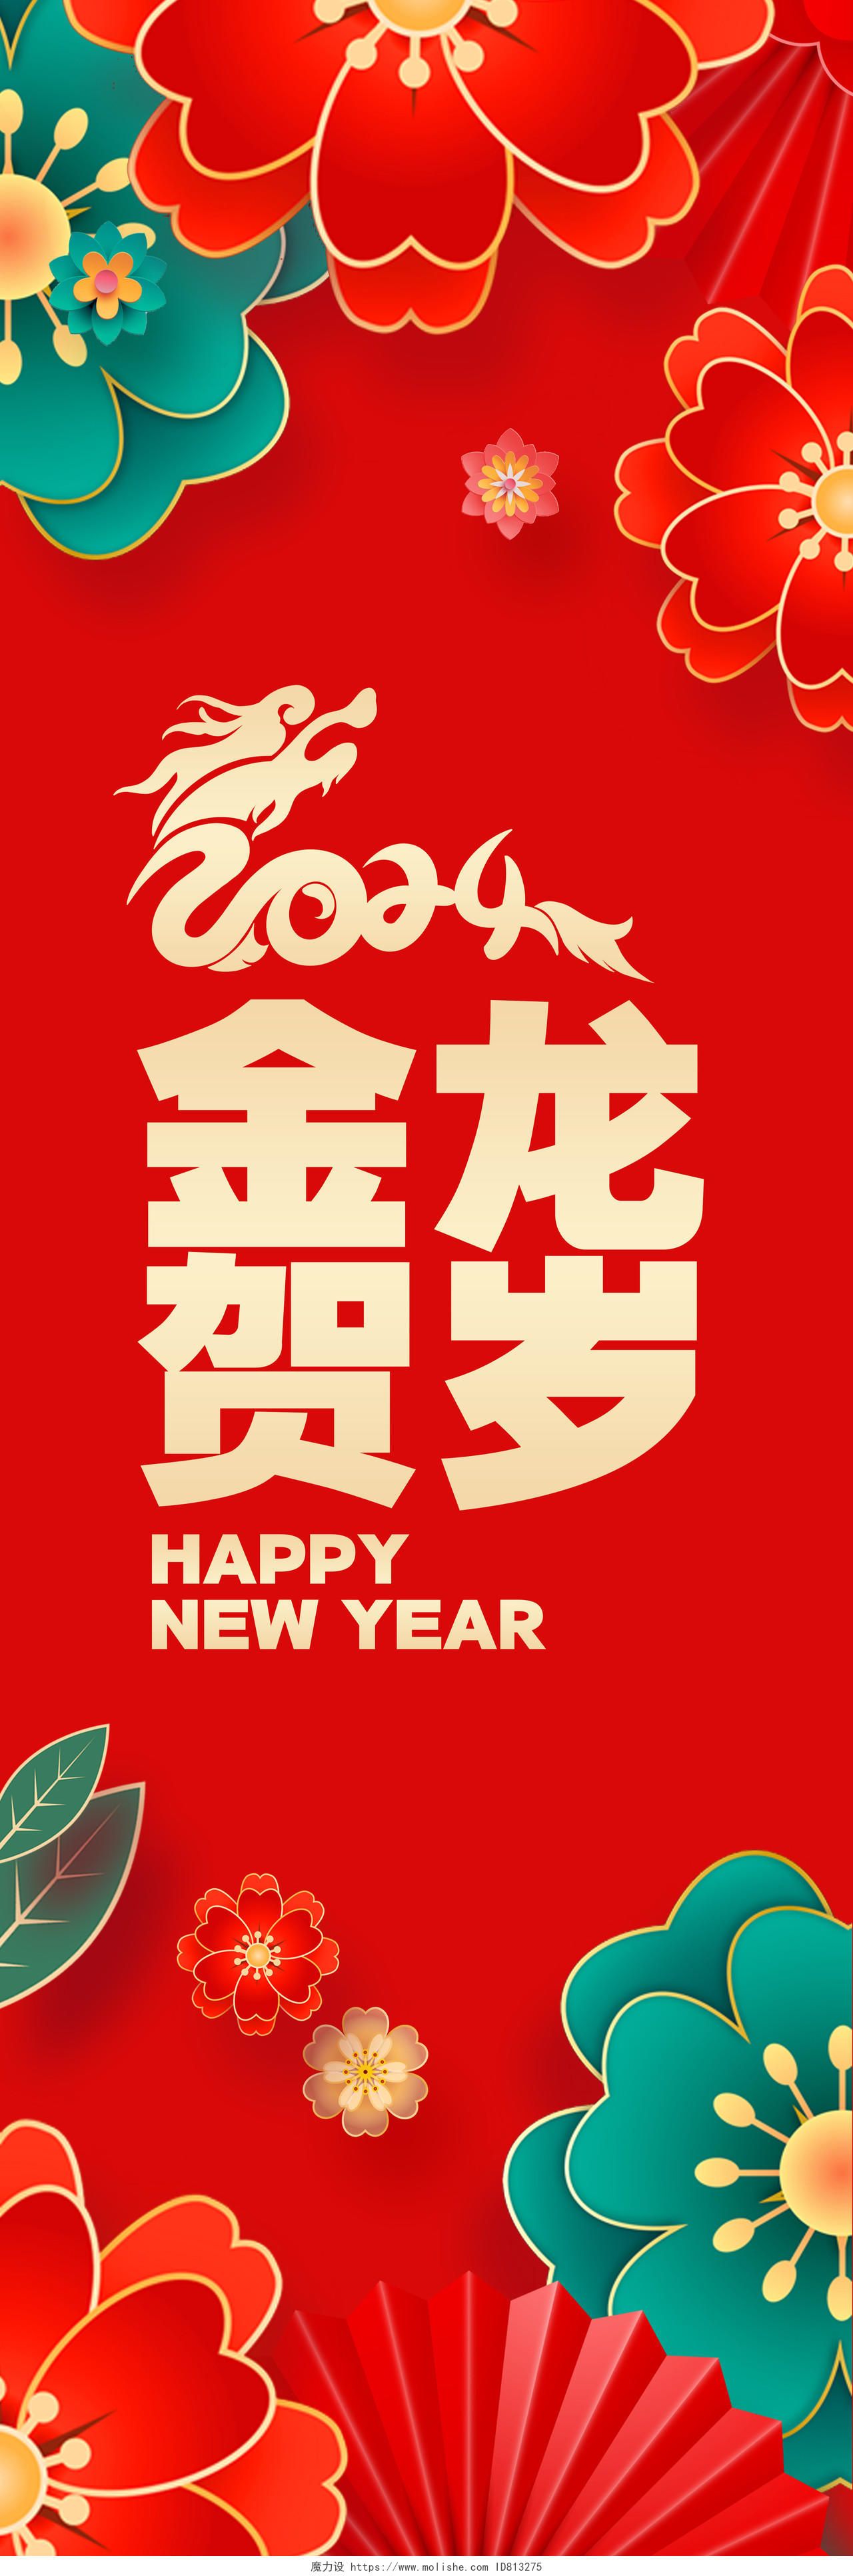 红色喜庆2024龙年新年春节挂画吊旗展板设计新年龙年